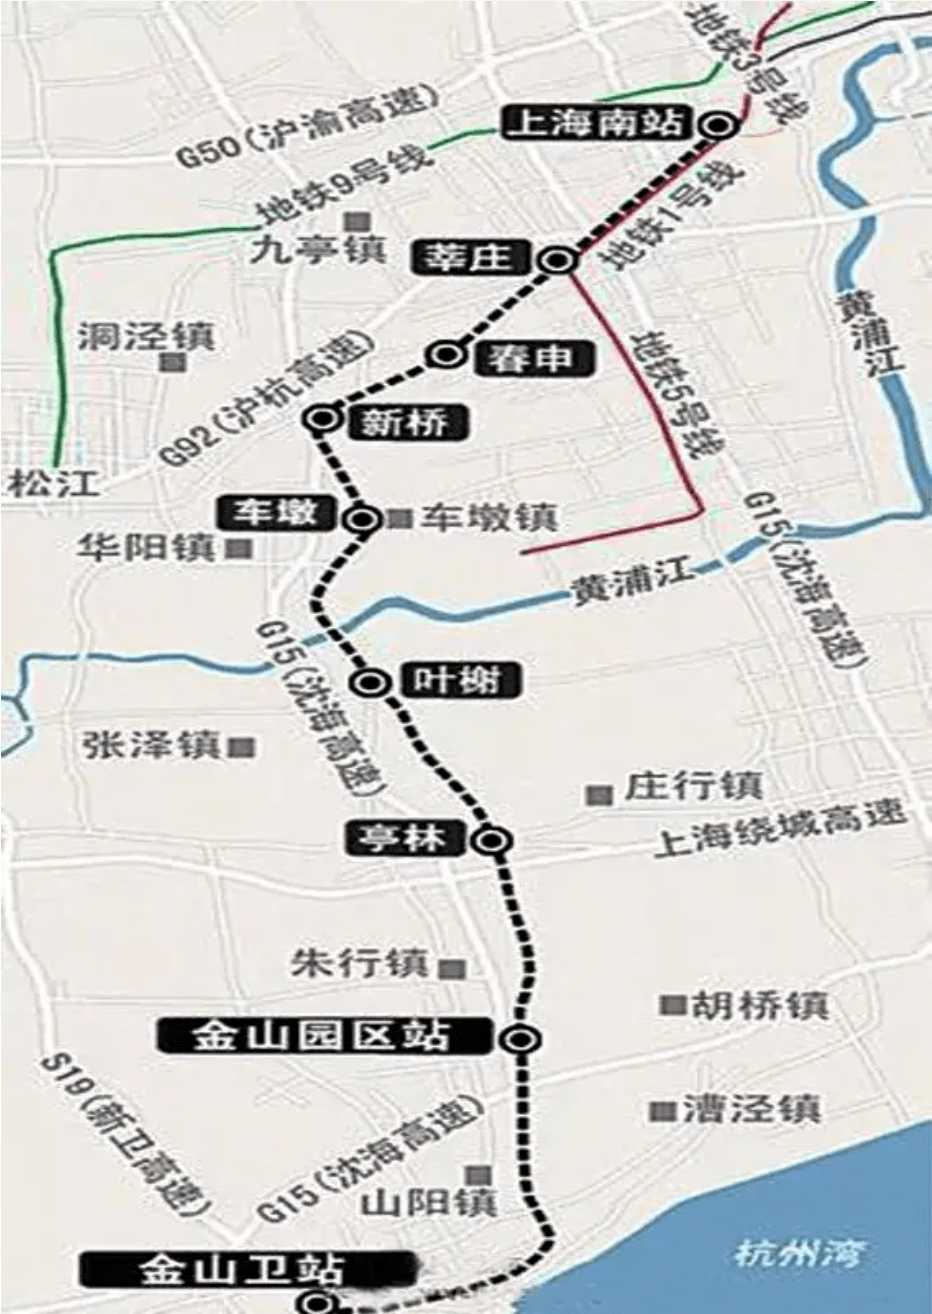 上海地铁金山铁路线图片